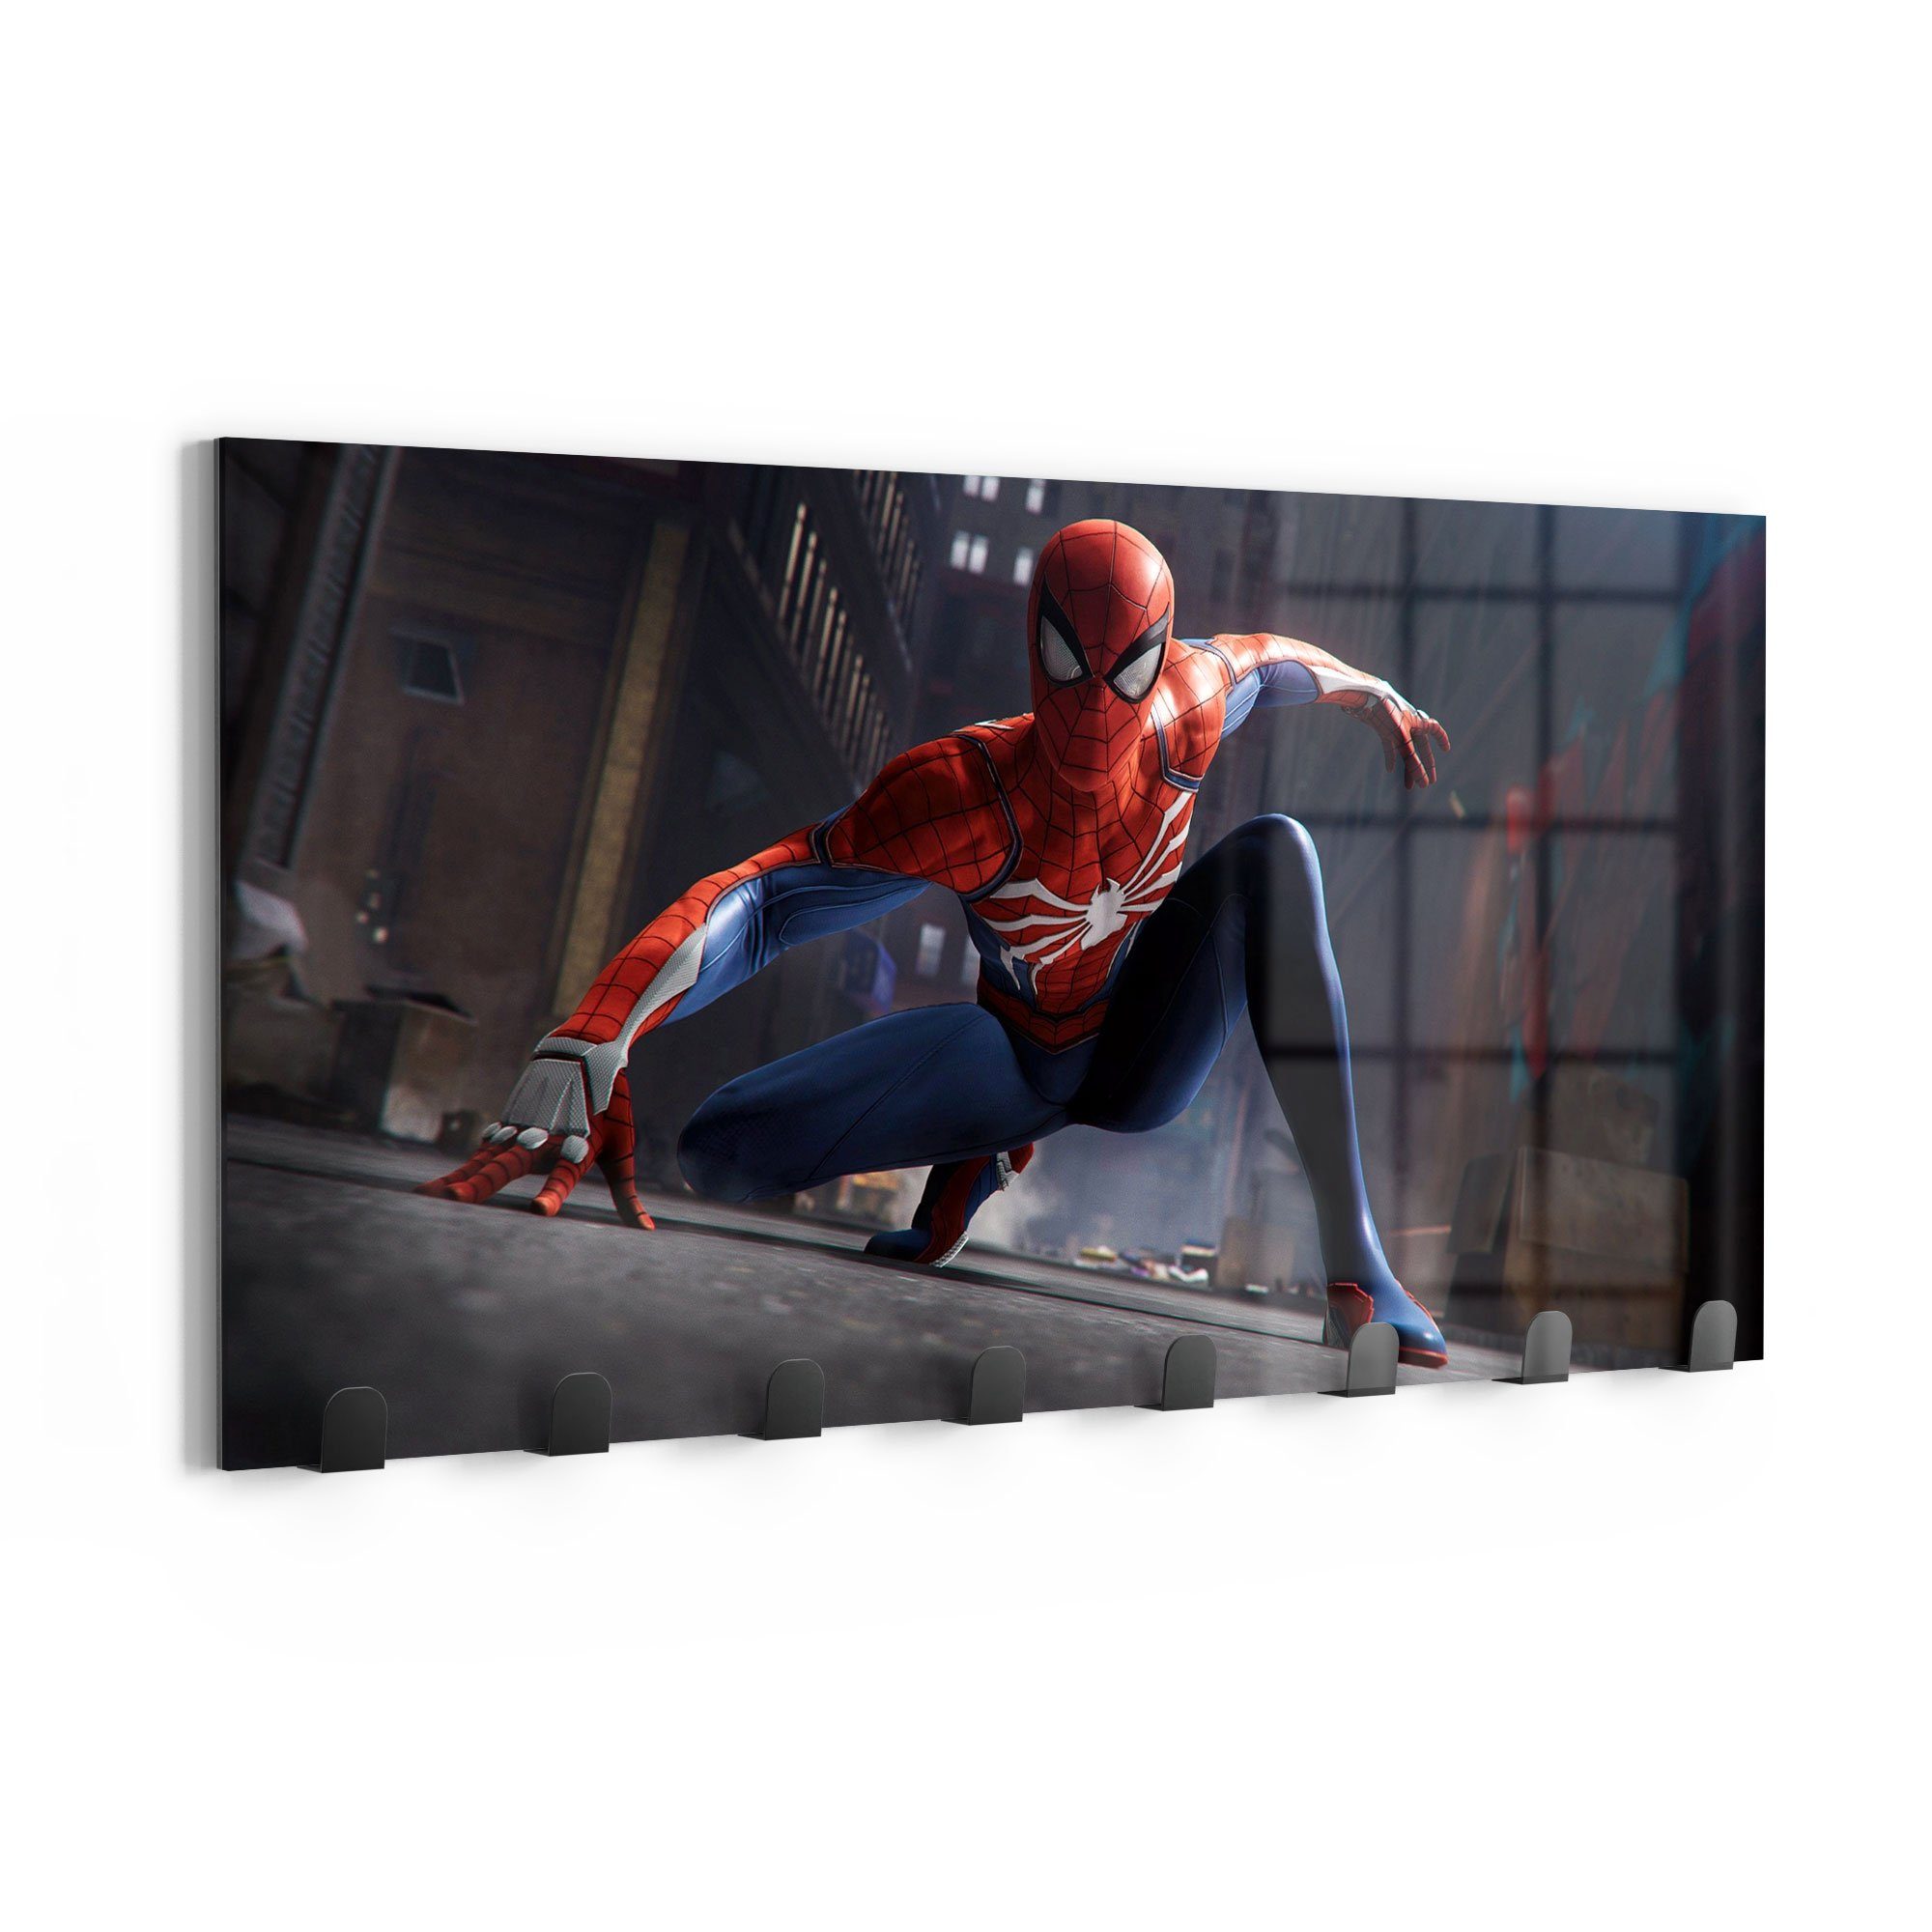 DEQORI Kleiderhaken 'Spider-Man Superheld', Glas Garderobe Paneel magnetisch beschreibbar